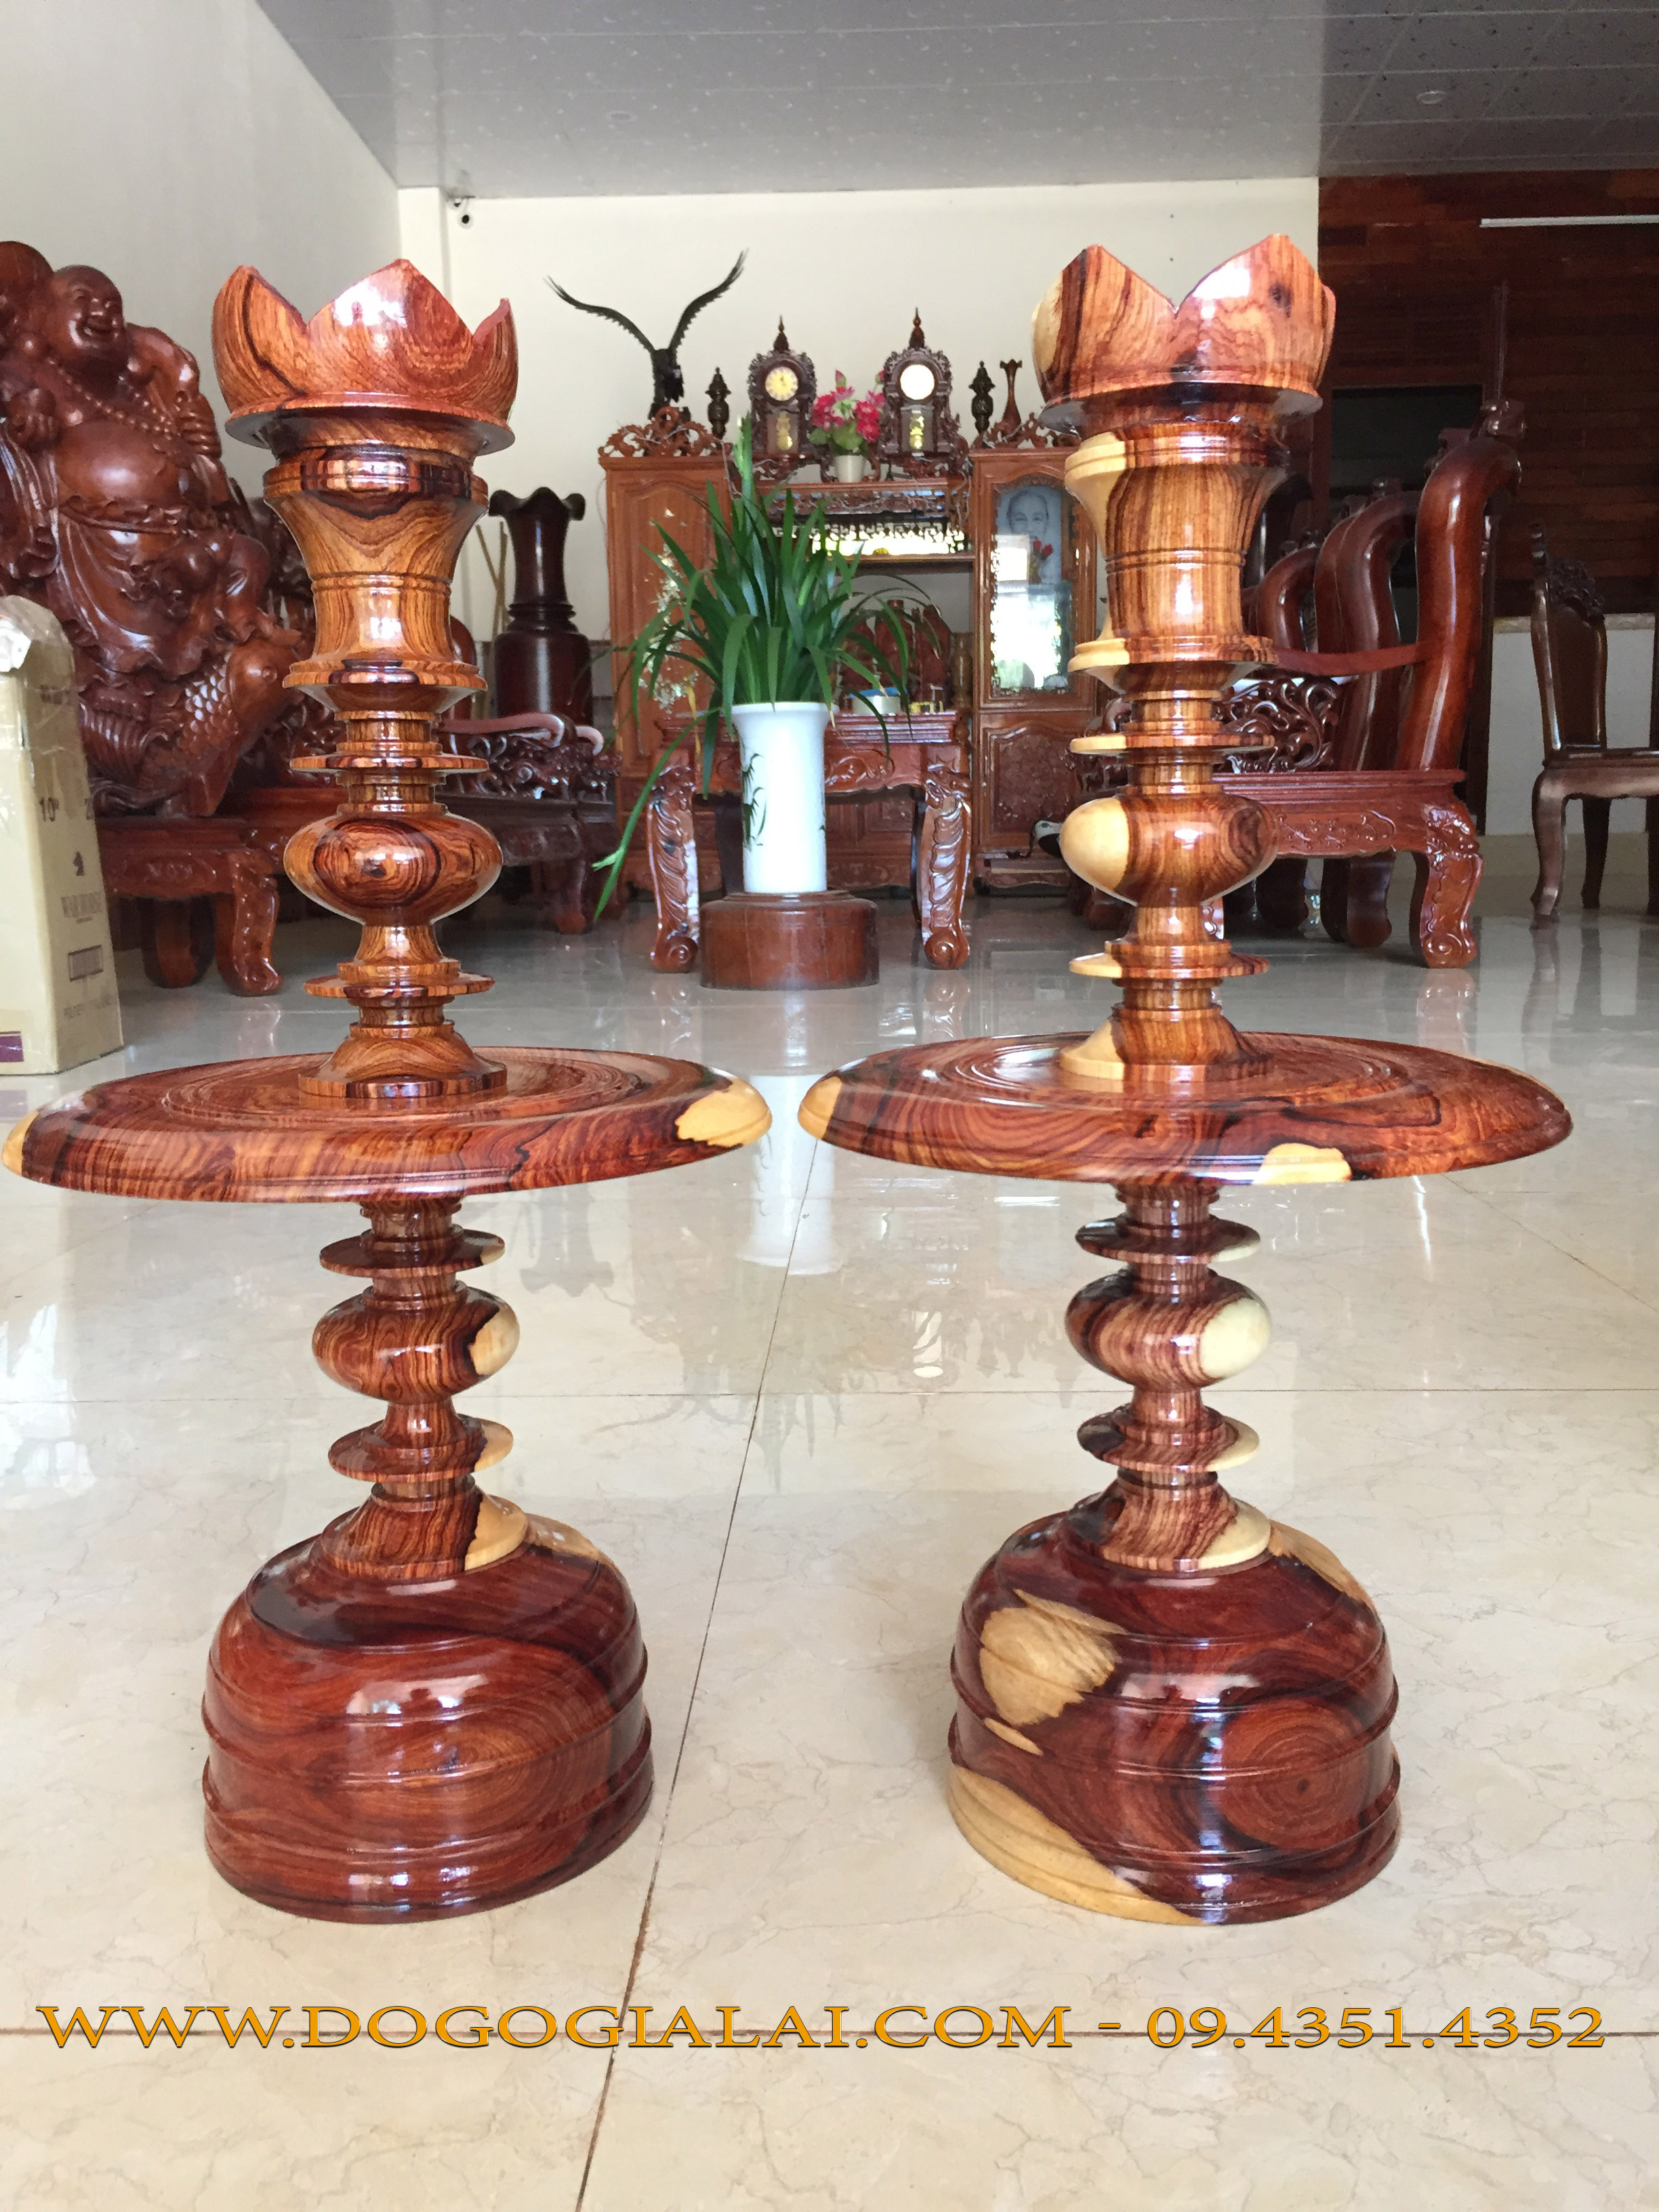 Cặp chân đèn thờ gỗ cẩm lai và ý nghĩa cặp đèn thờ - Đồ Gỗ Gia Lai